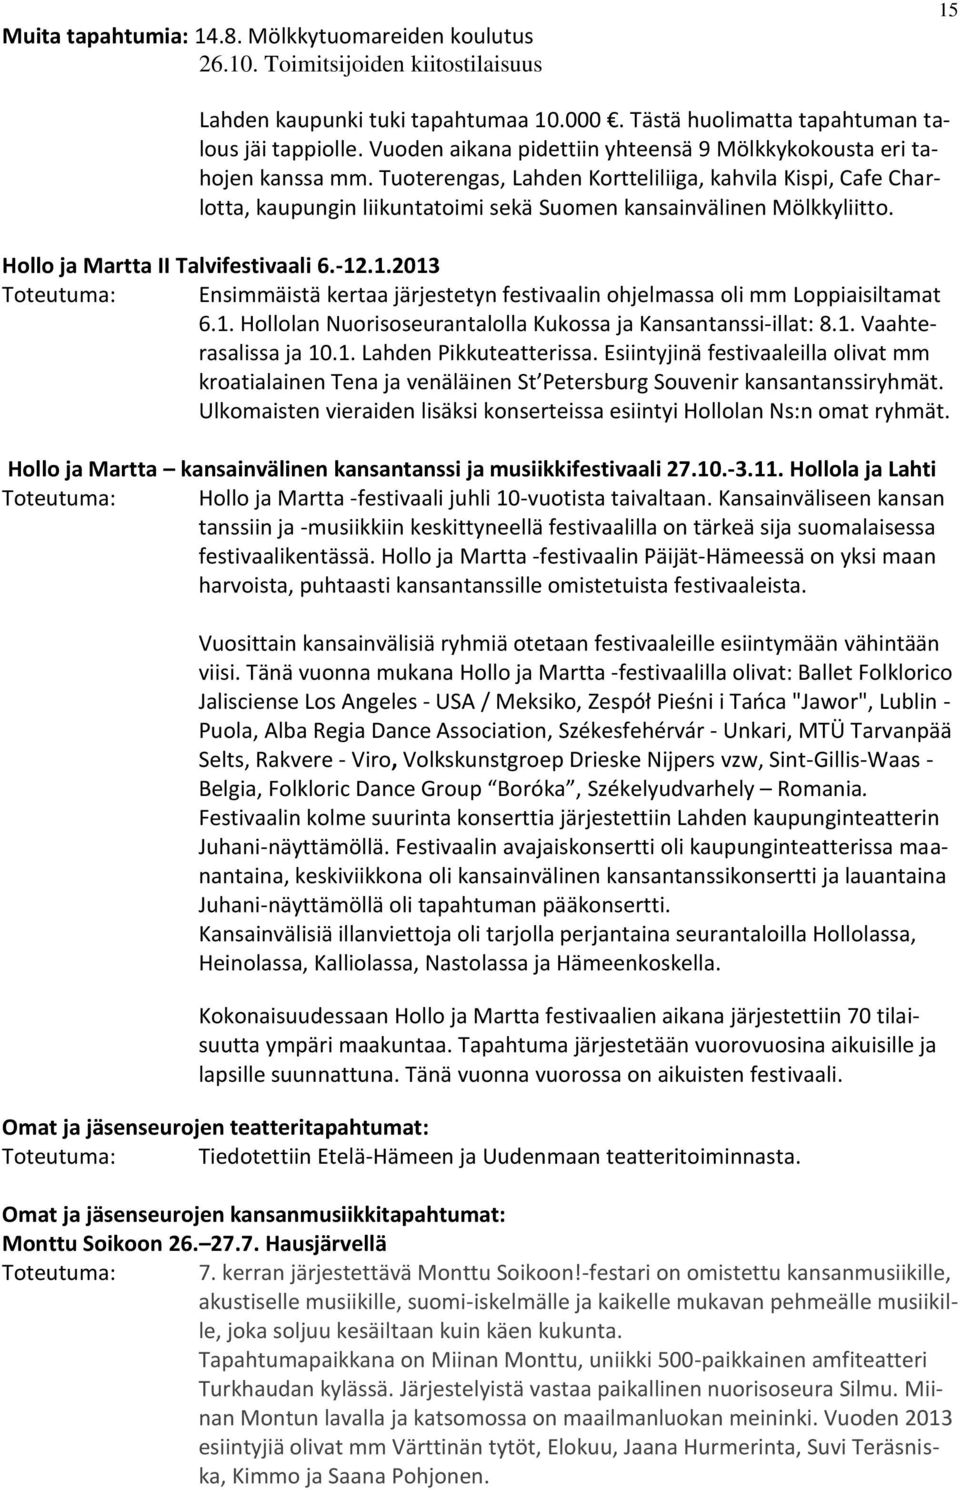 Tuoterengas, Lahden Kortteliliiga, kahvila Kispi, Cafe Charlotta, kaupungin liikuntatoimi sekä Suomen kansainvälinen Mölkkyliitto. Hollo ja Martta II Talvifestivaali 6.-12